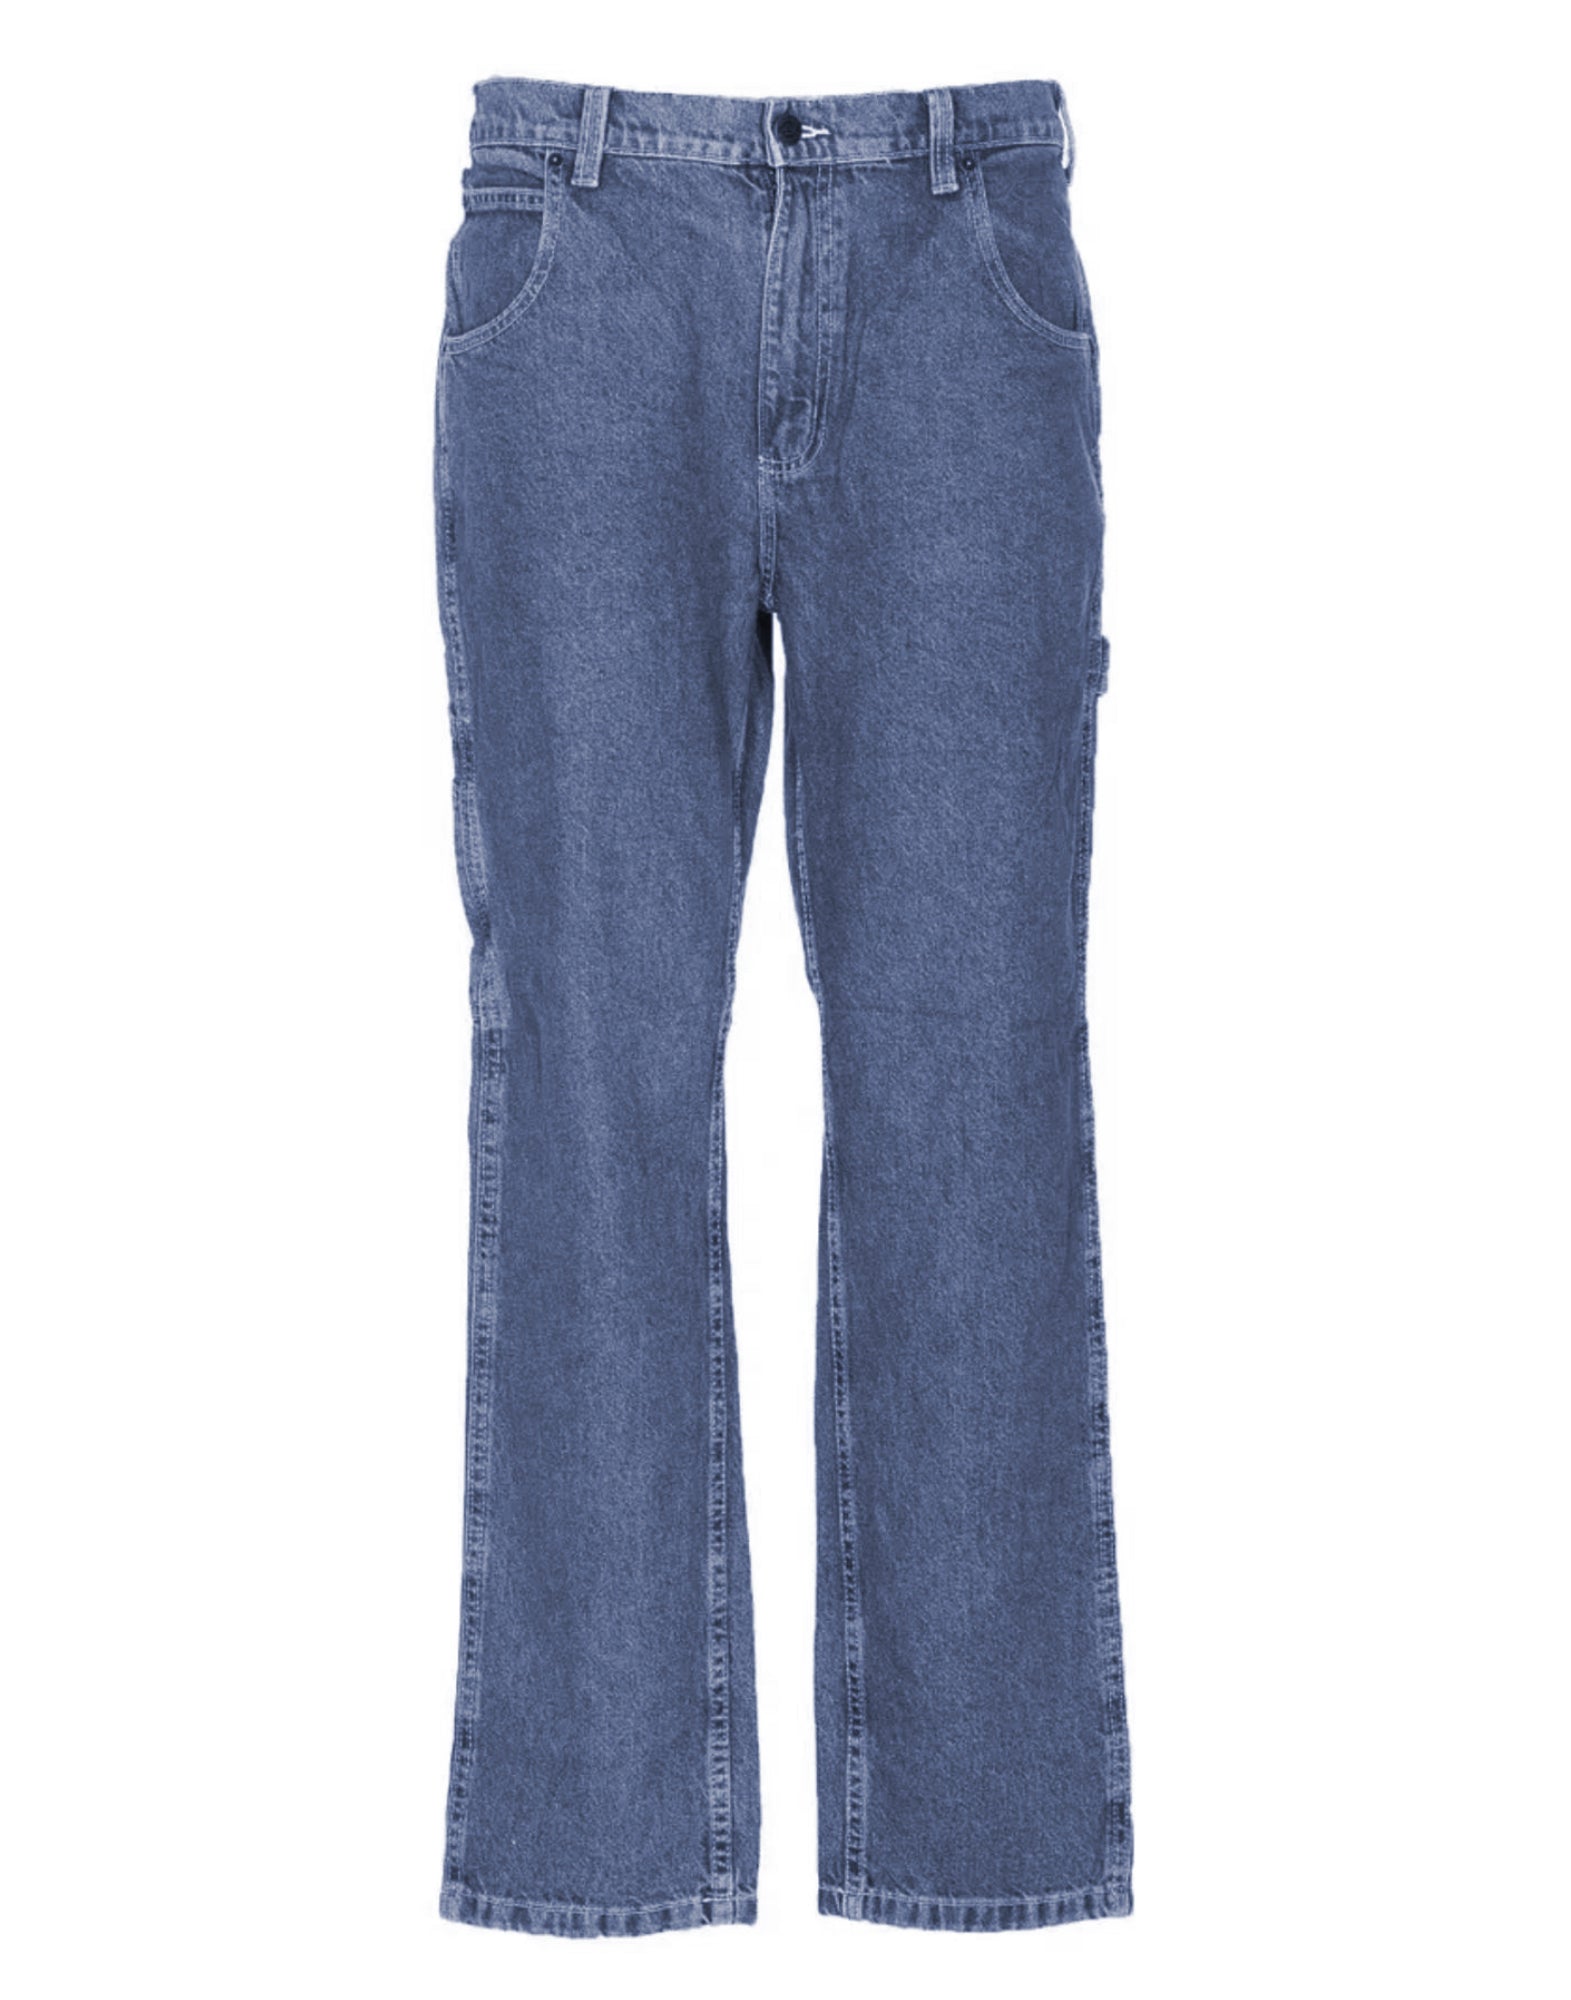 Jeans für Frauen DK 0A4 KCLB DICKIES